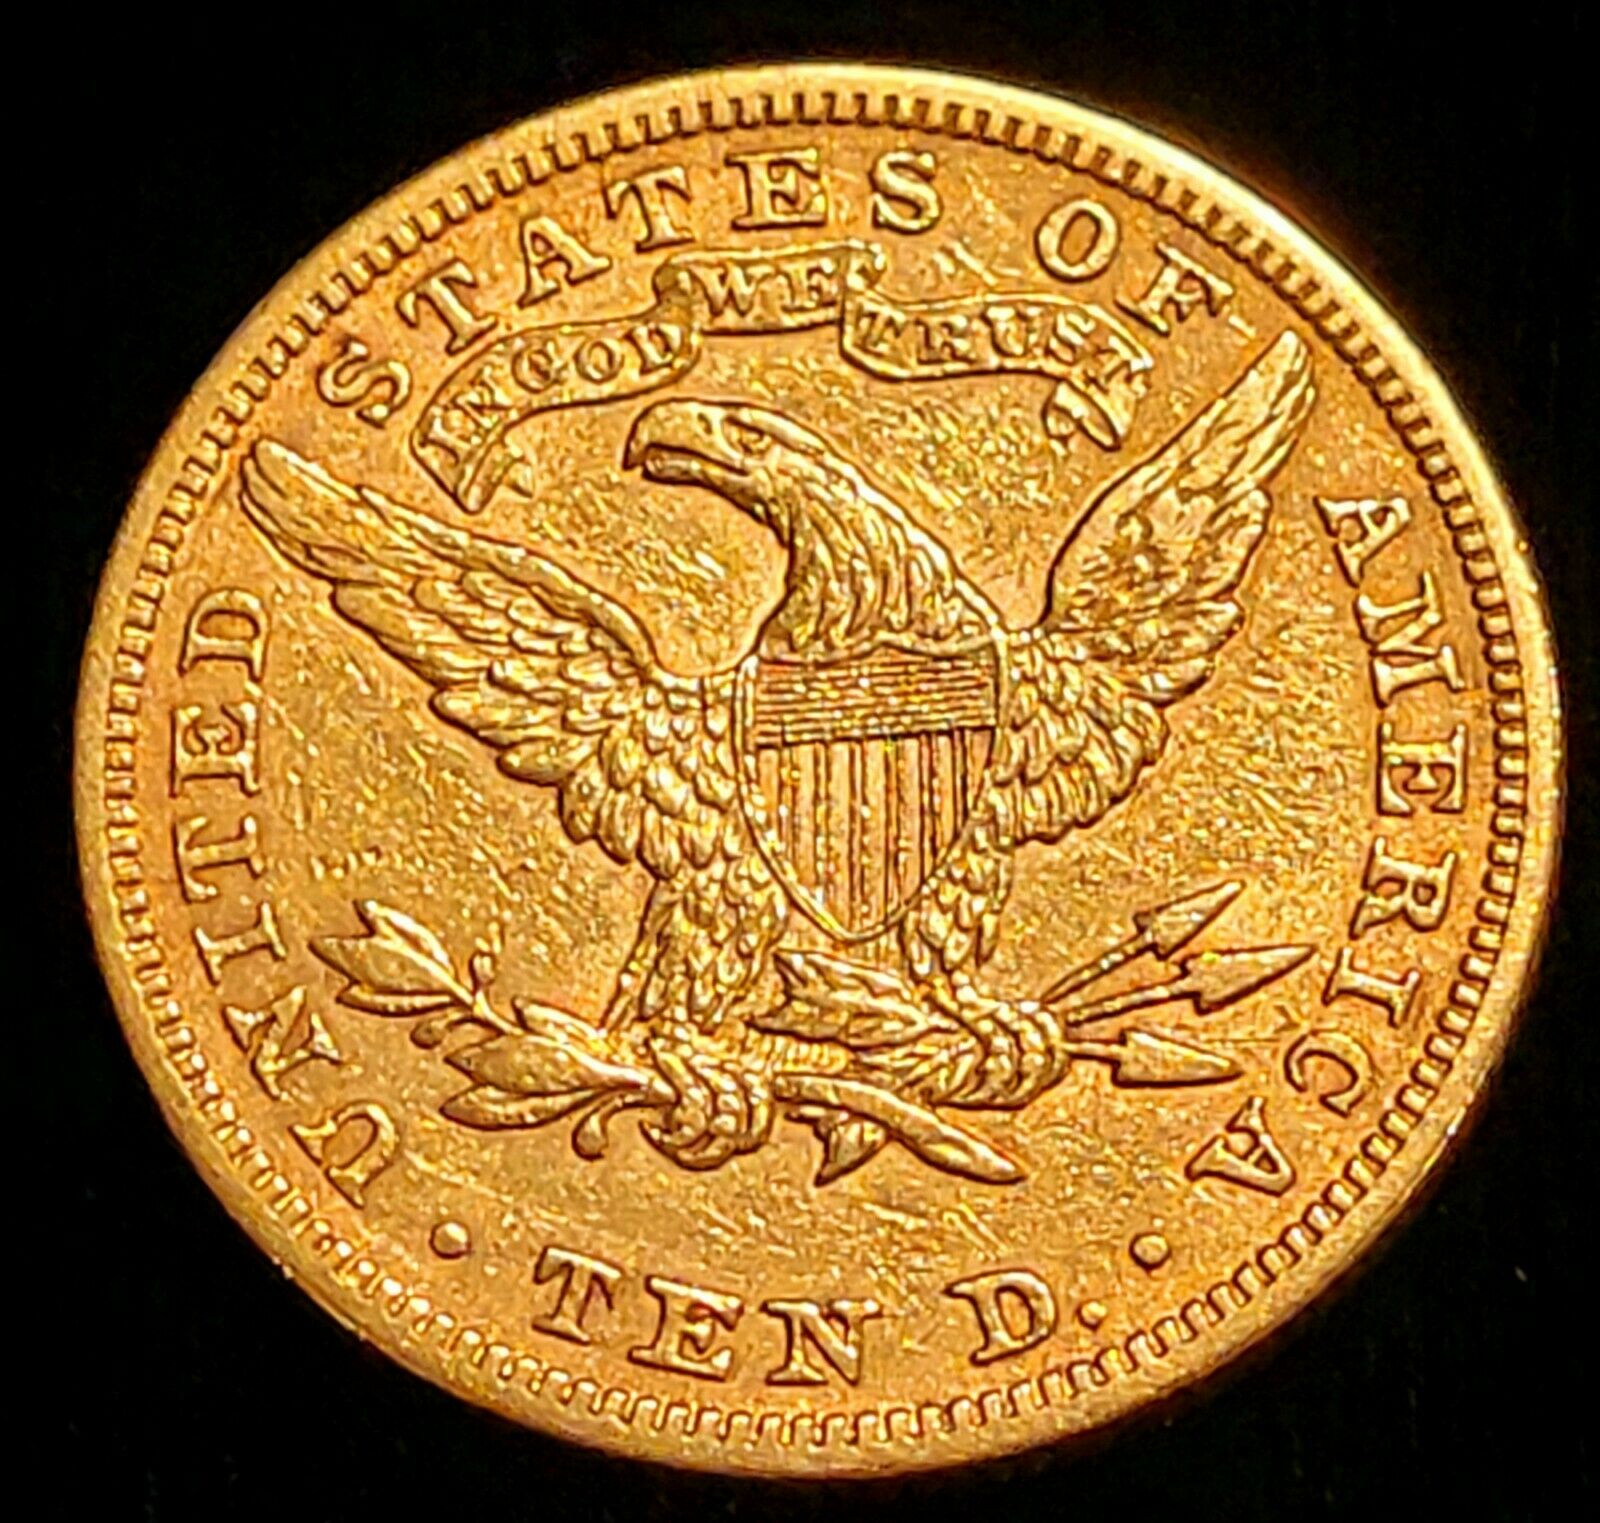 Rare 1895 Unc $10 Gold Double Eagle Exonumia John White Family Wedding Message!